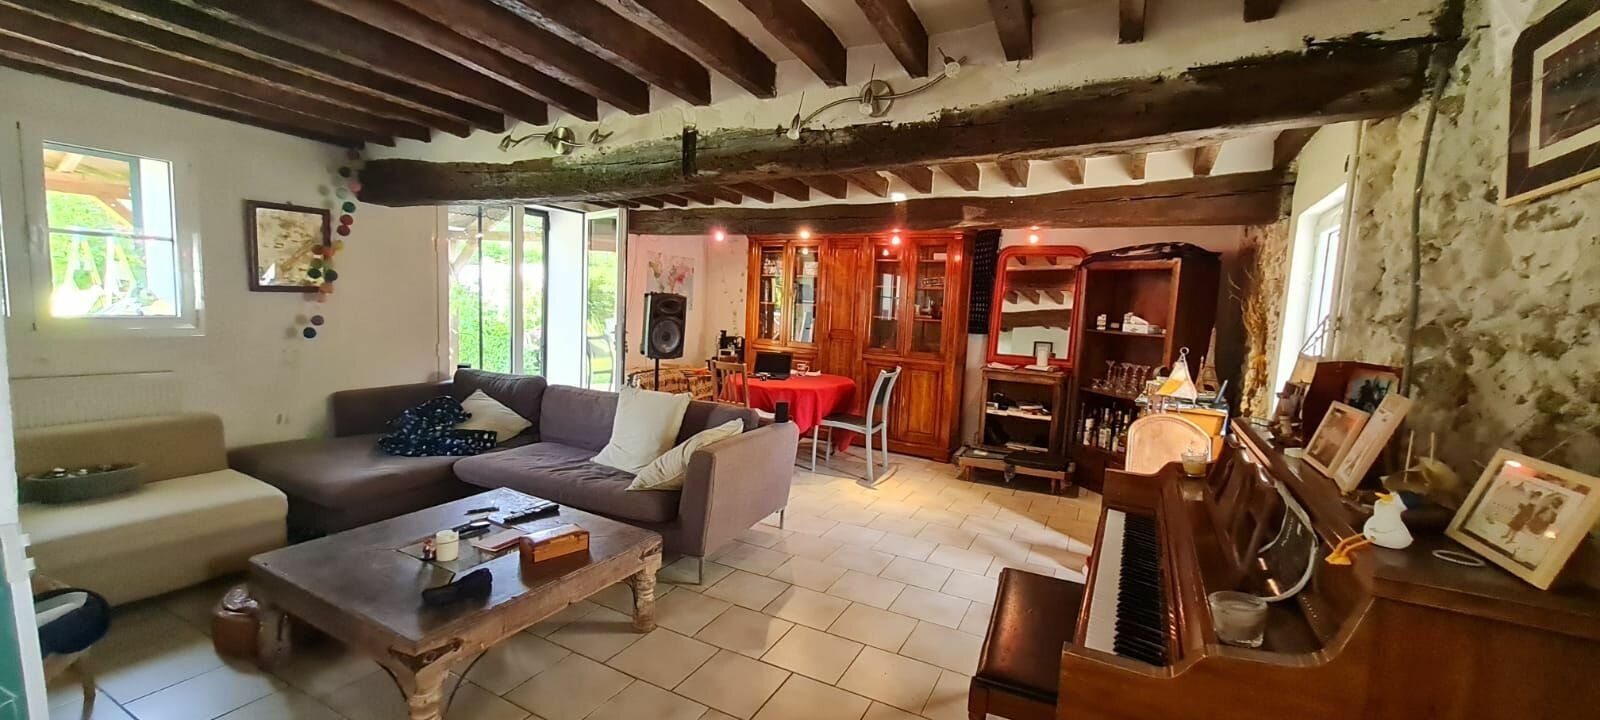 Maison à vendre 4 125m2 à Ussy-sur-Marne vignette-5